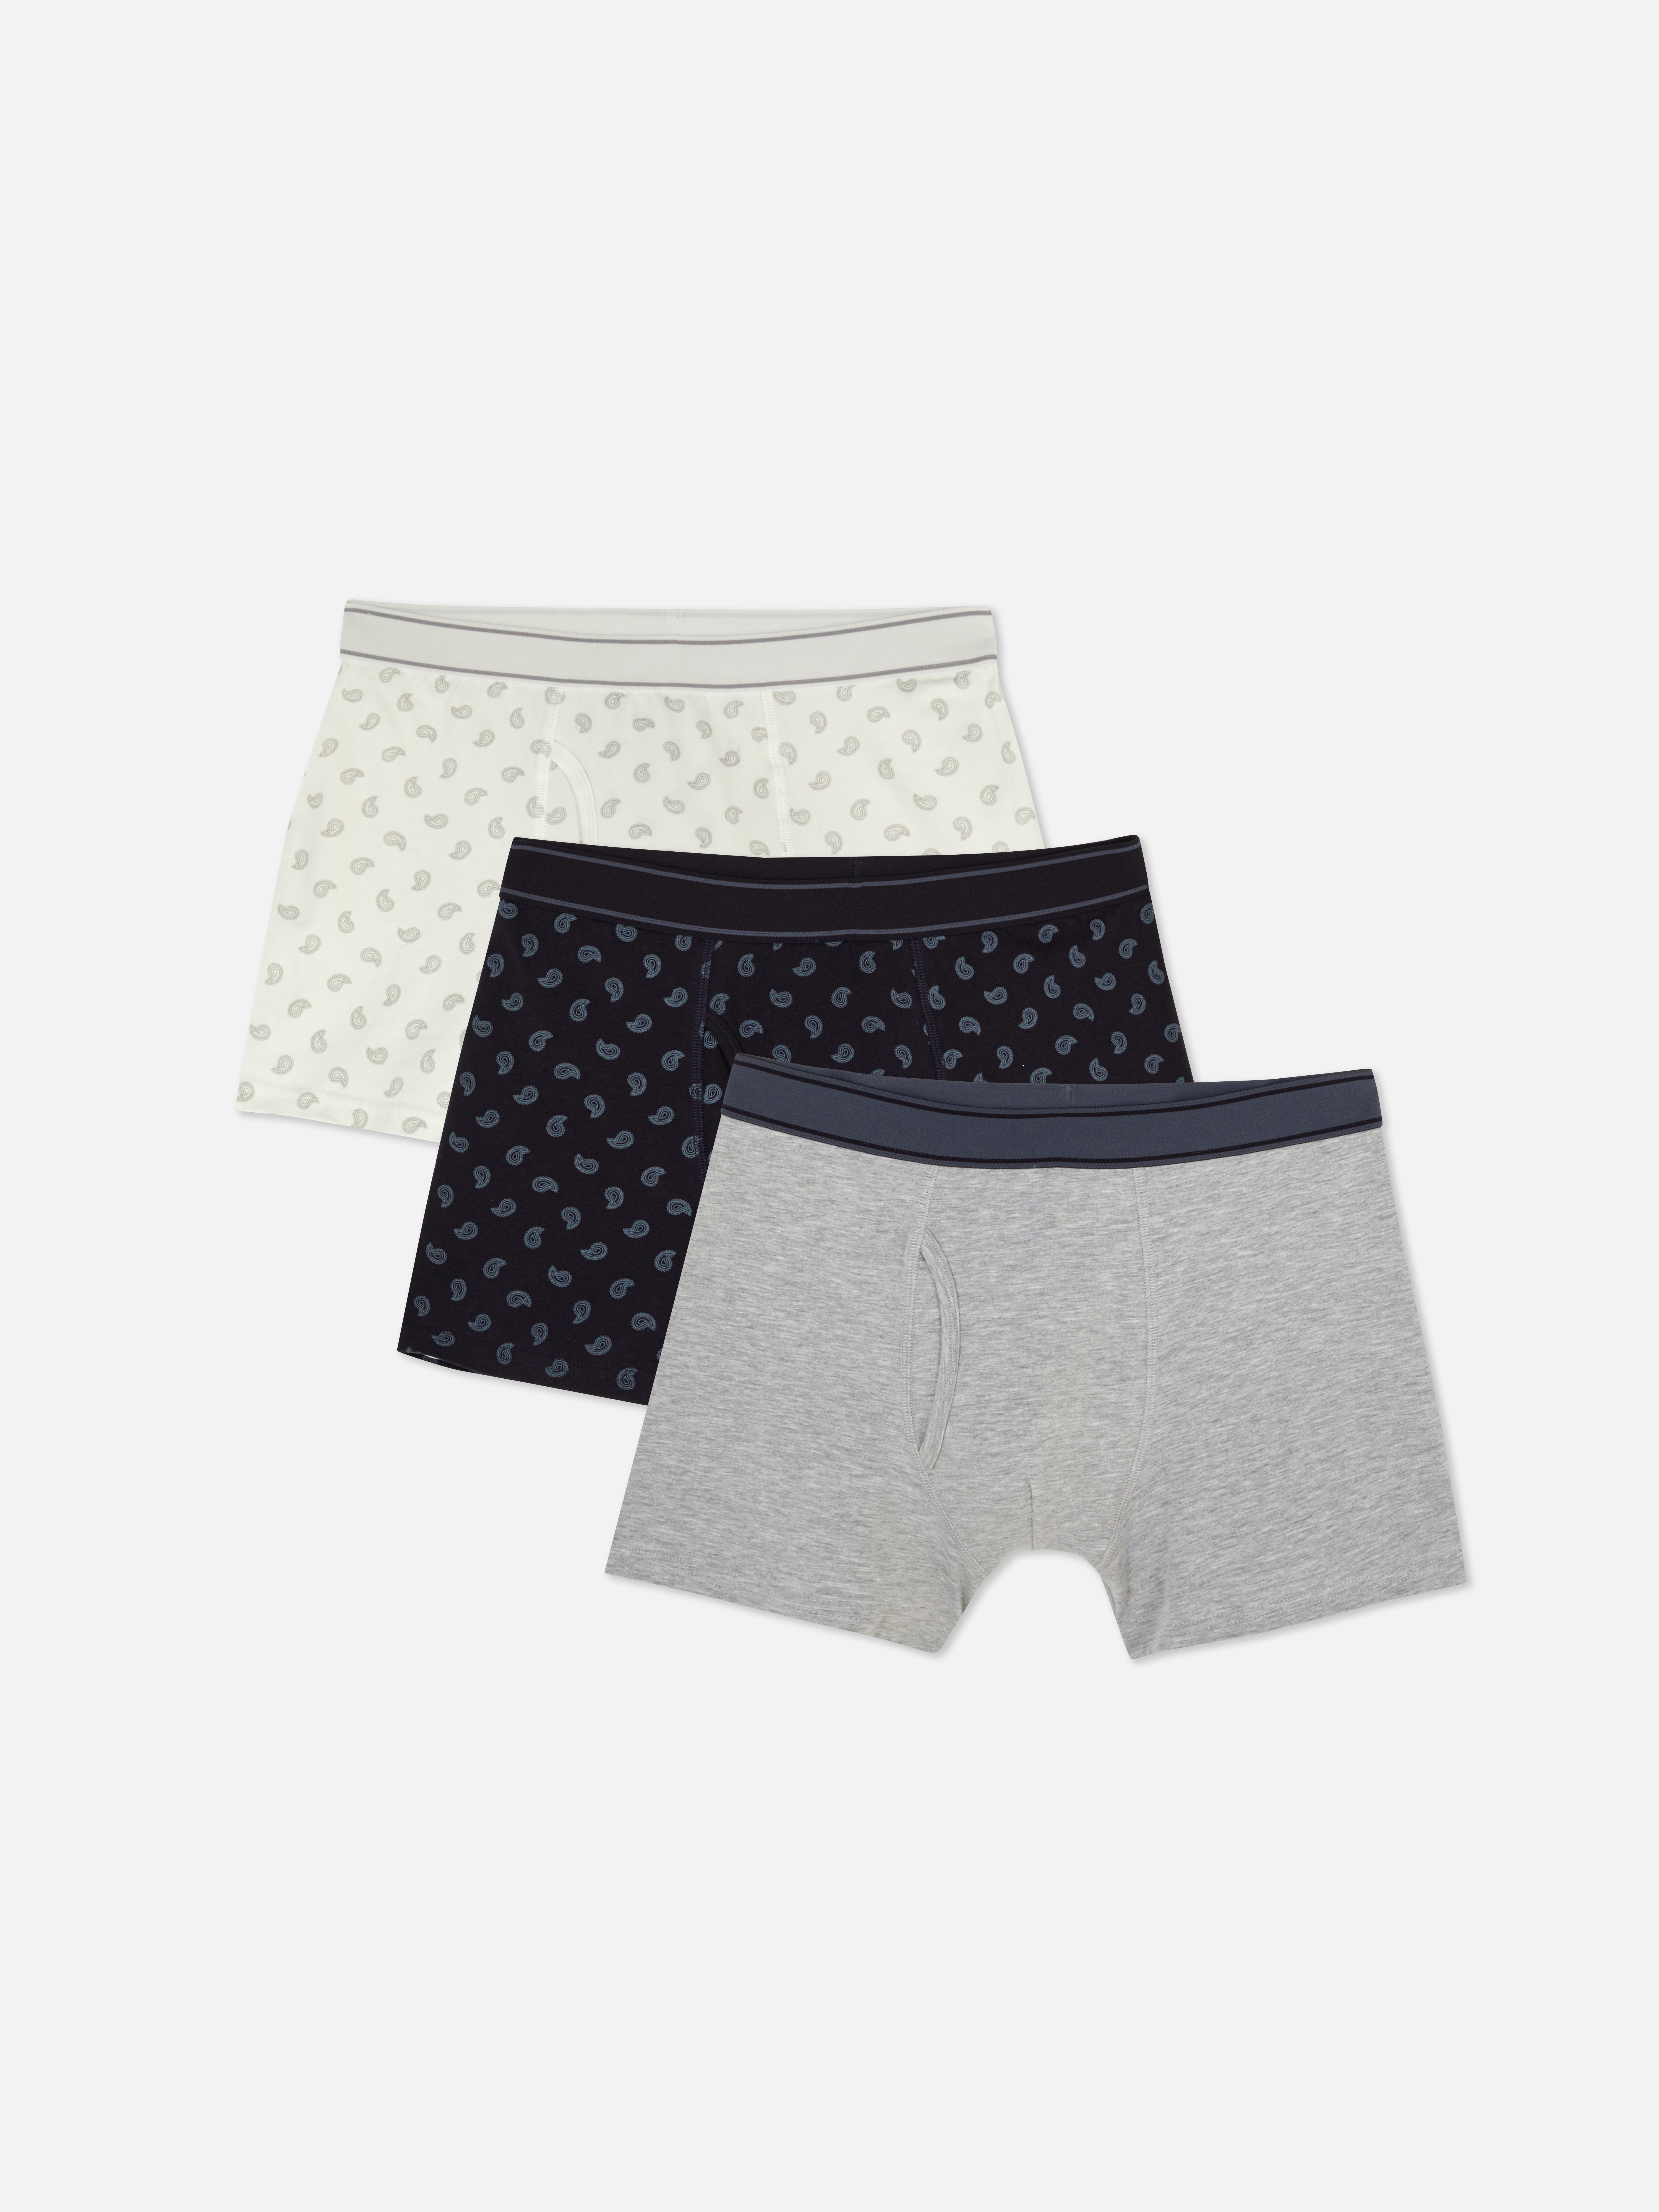 Men's Underwear | Men's Boxers, Briefs & Trunks | Primark